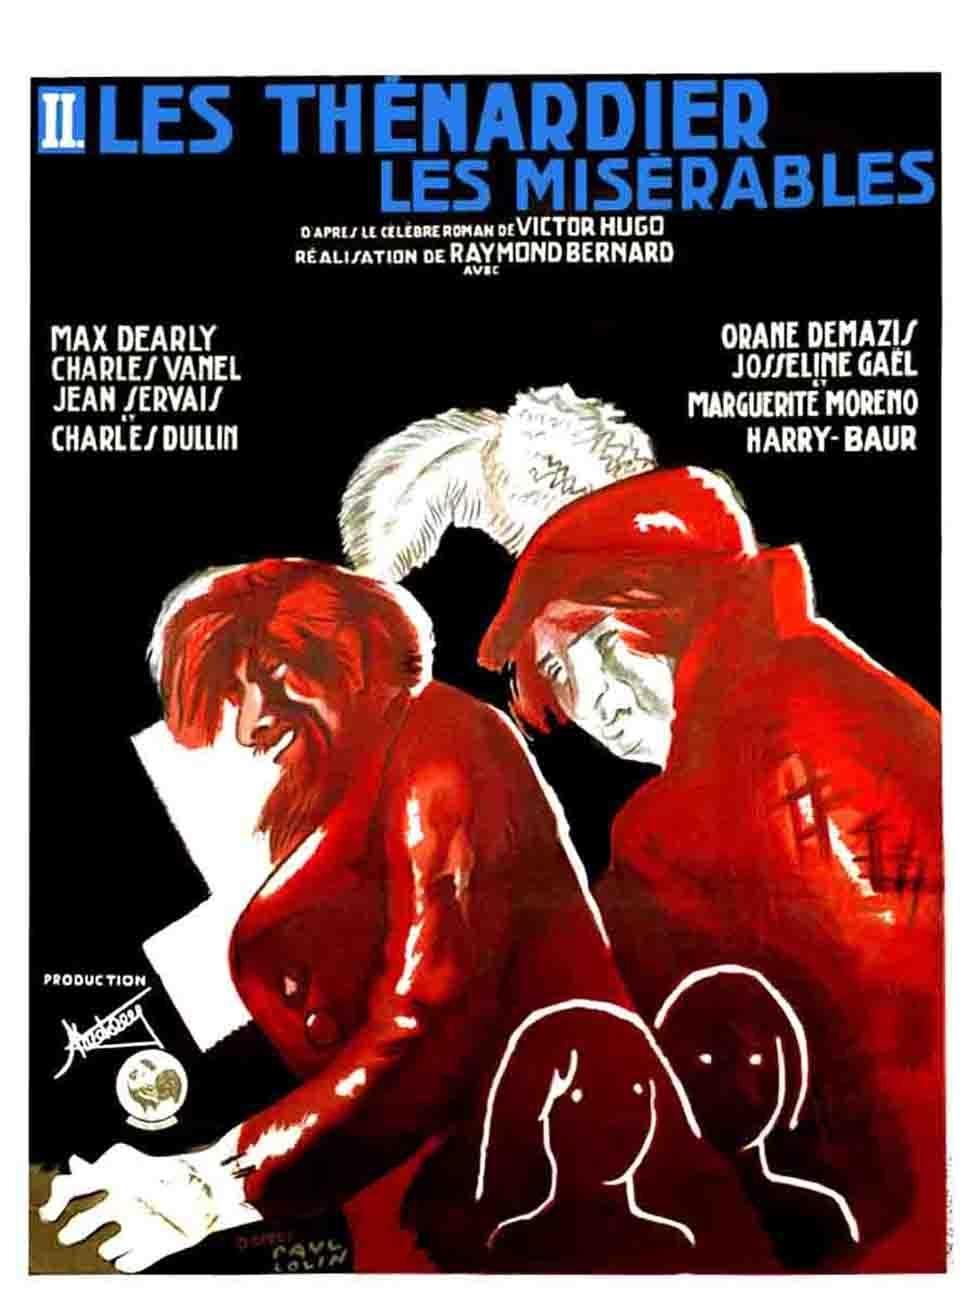 Постер фильма Les misérables